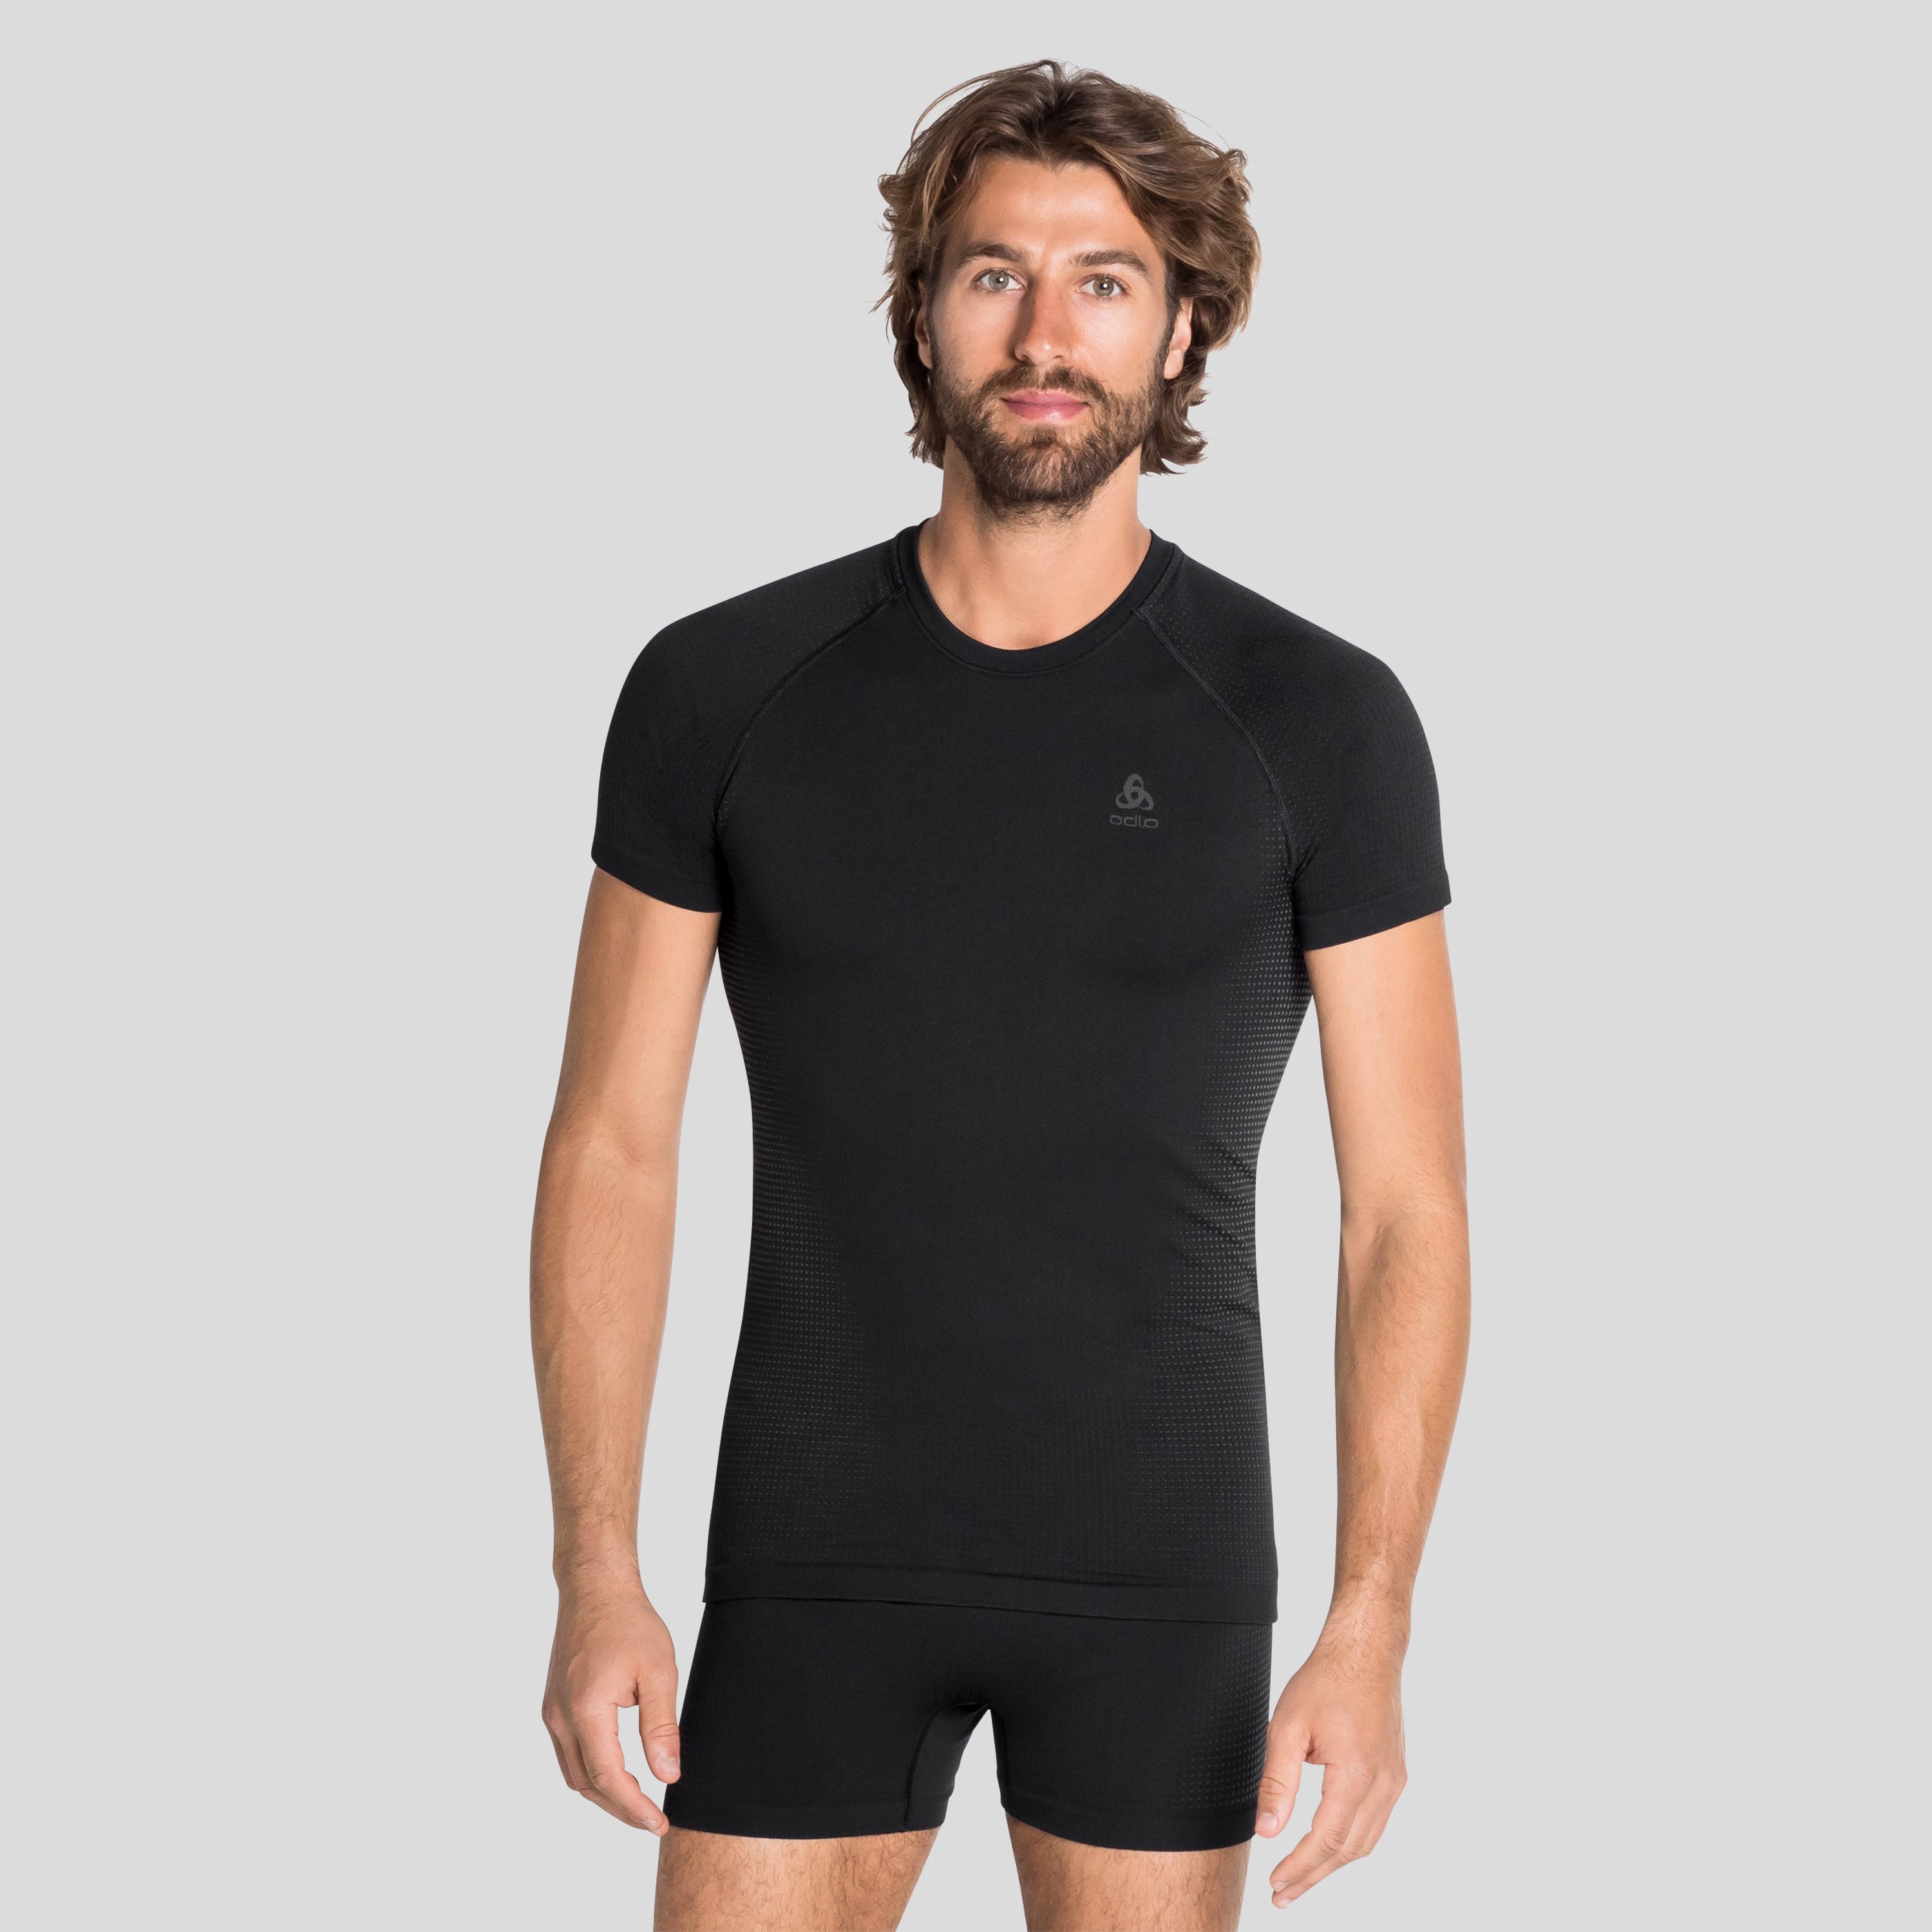 ODLO Performance Warm T-Shirt für Herren, S, schwarz